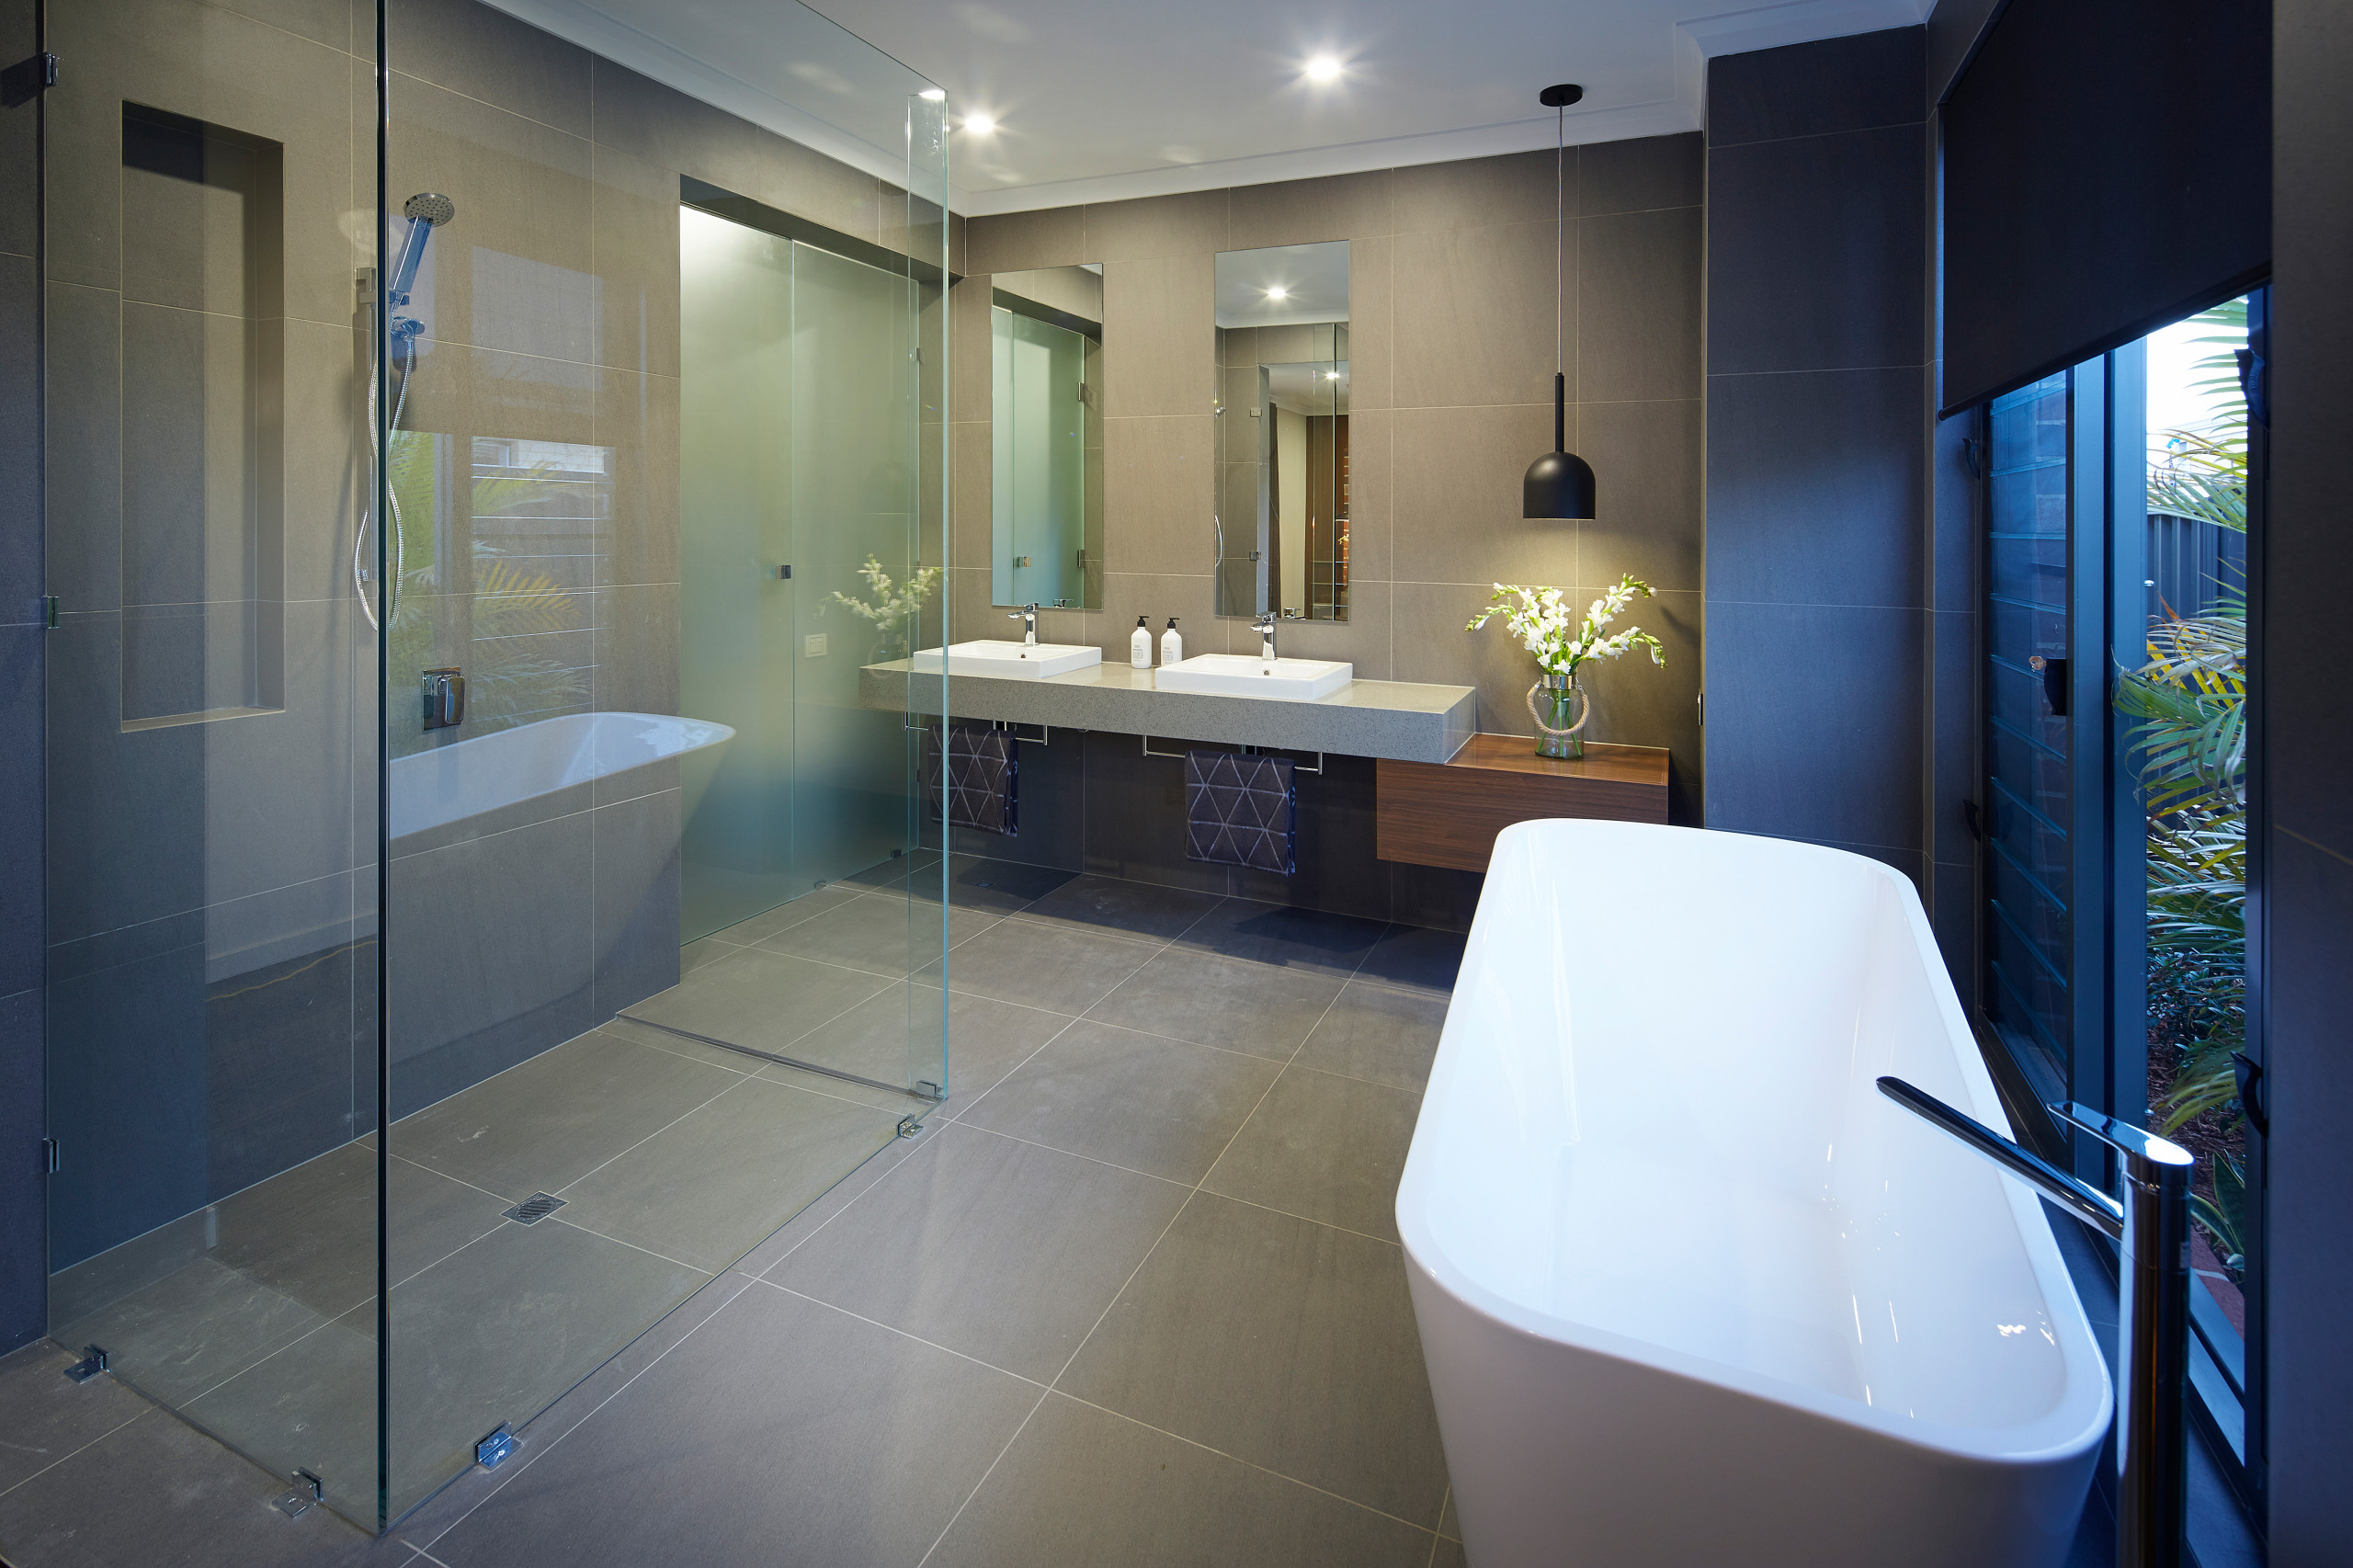 Badeværelse med gulv af terracotta fliser og en integreret håndvask - Houzz  - Februar 2022 | Houzz DK